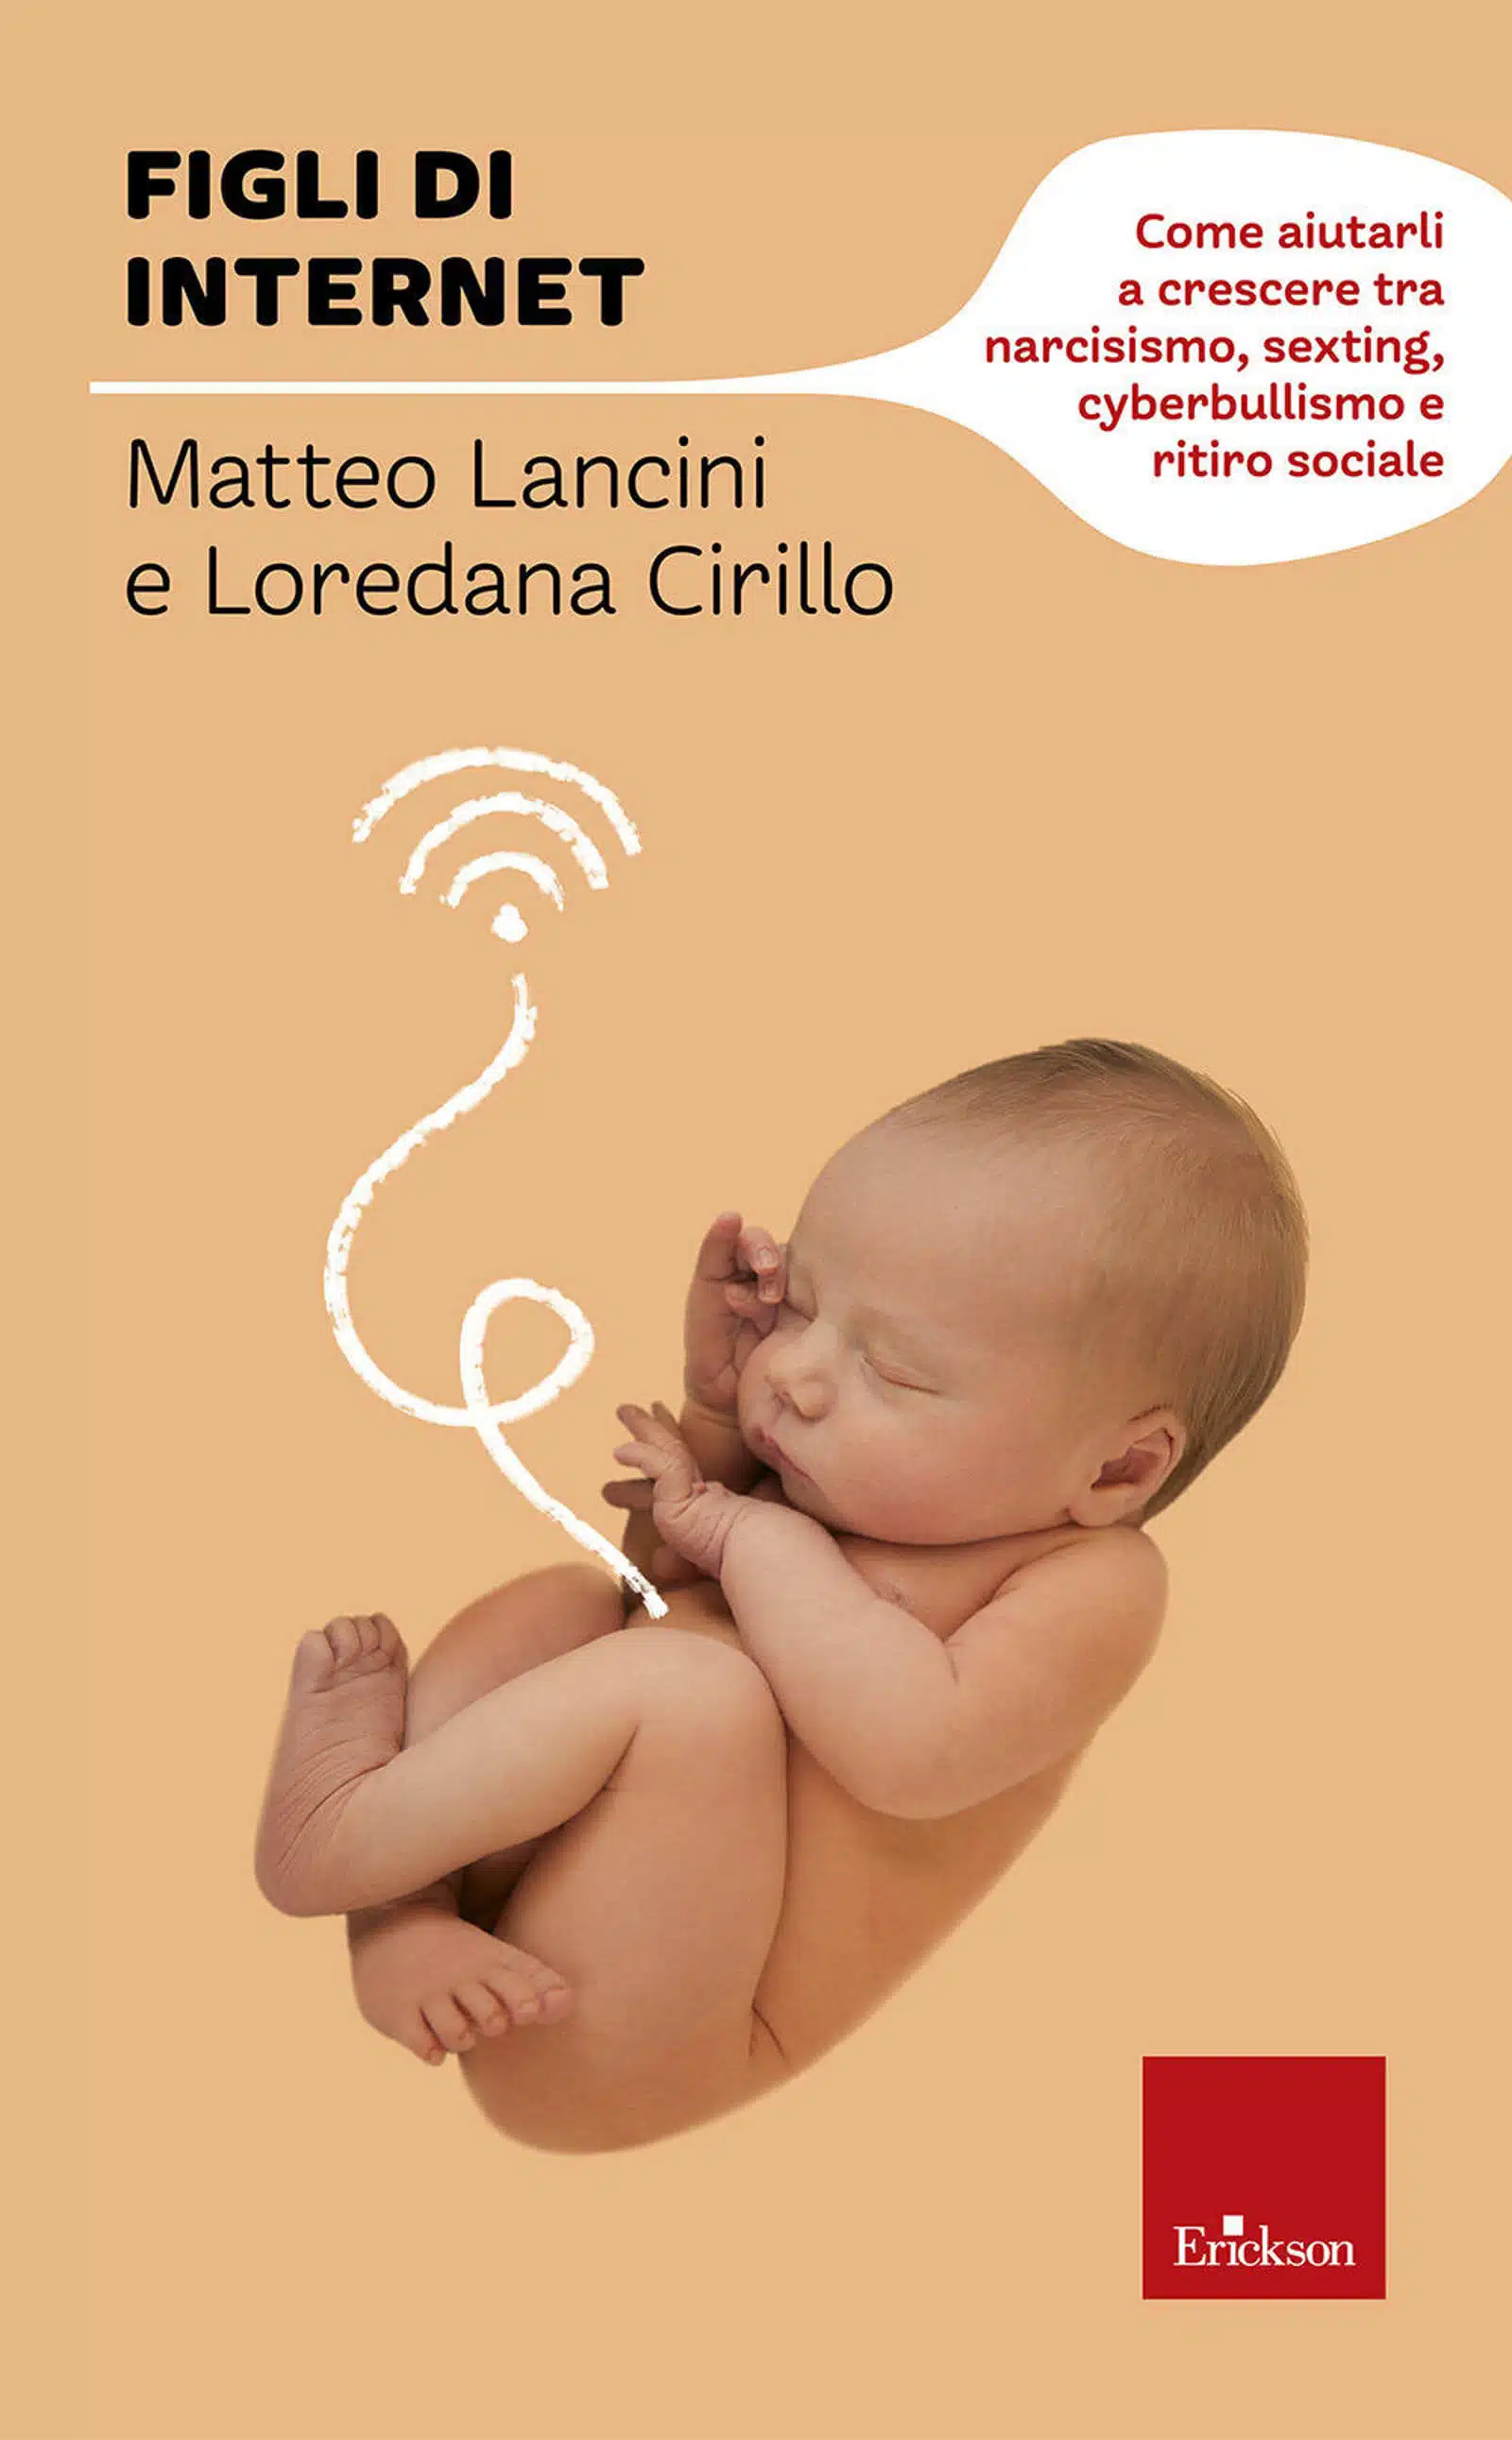 Figli di Internet 2022 di Matteo Lancini e Loredana Cirillo Recensione Featured